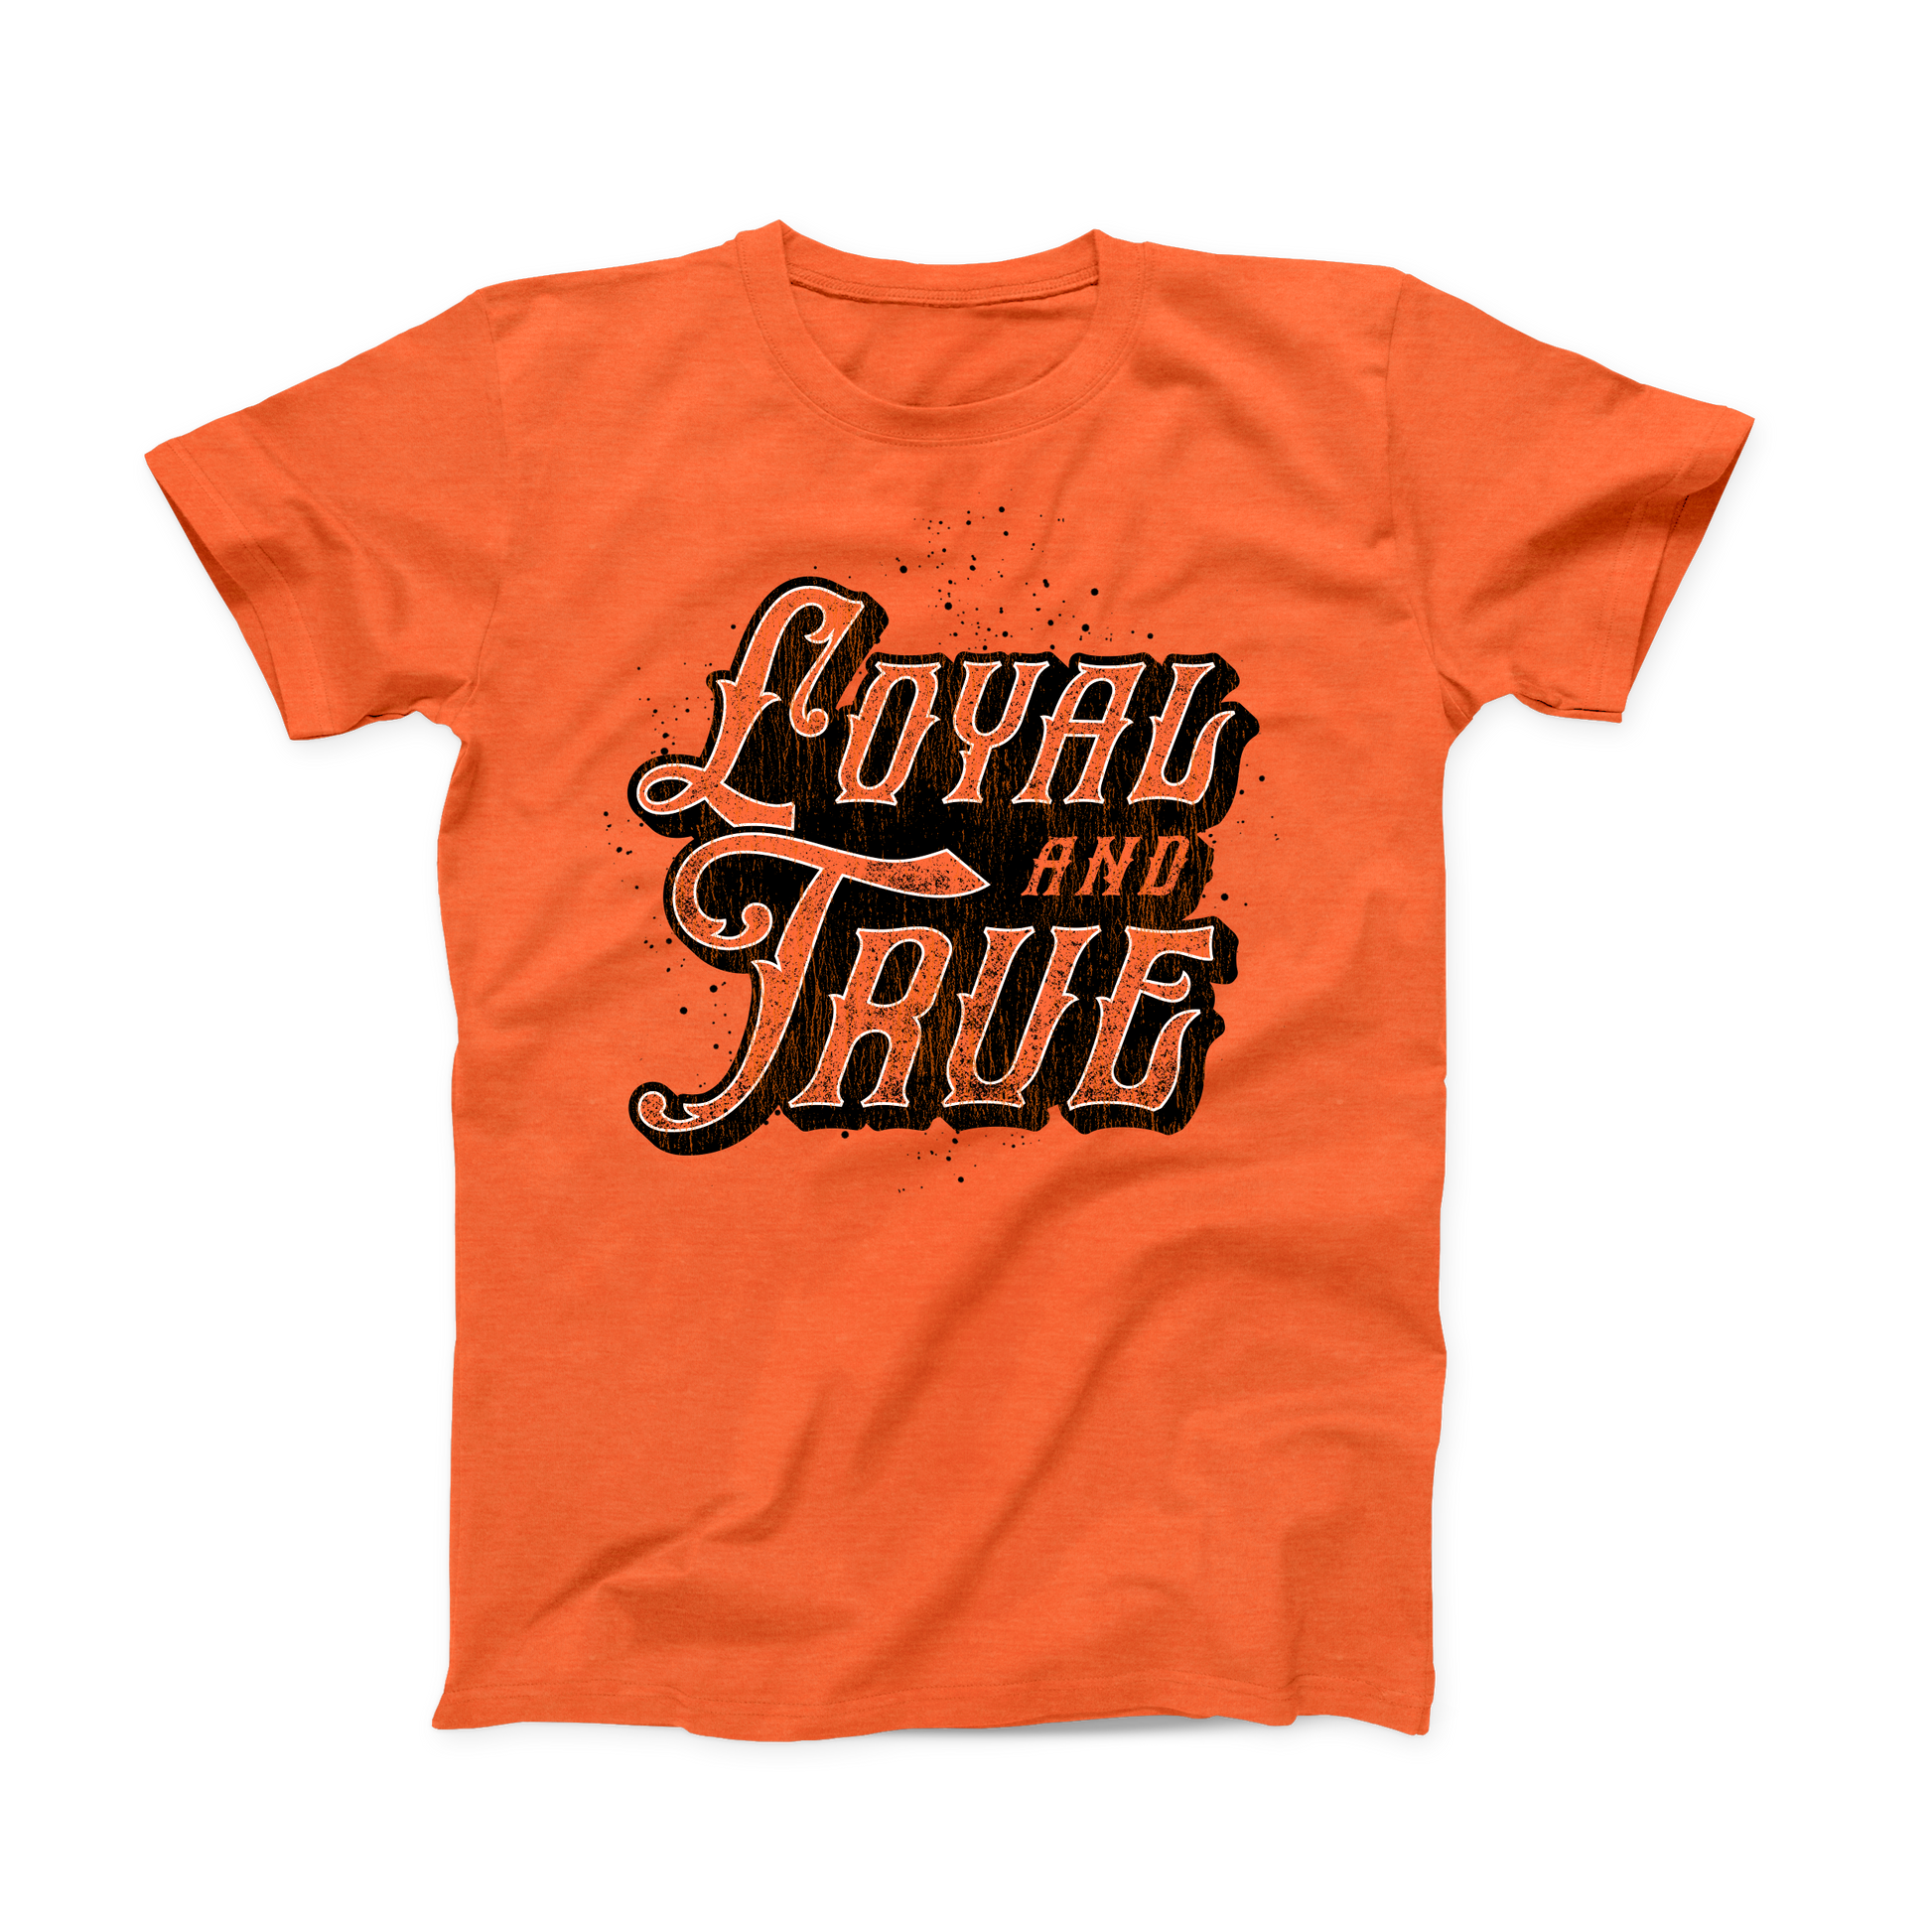 Orange OSU "Loyal and True" T-shirt